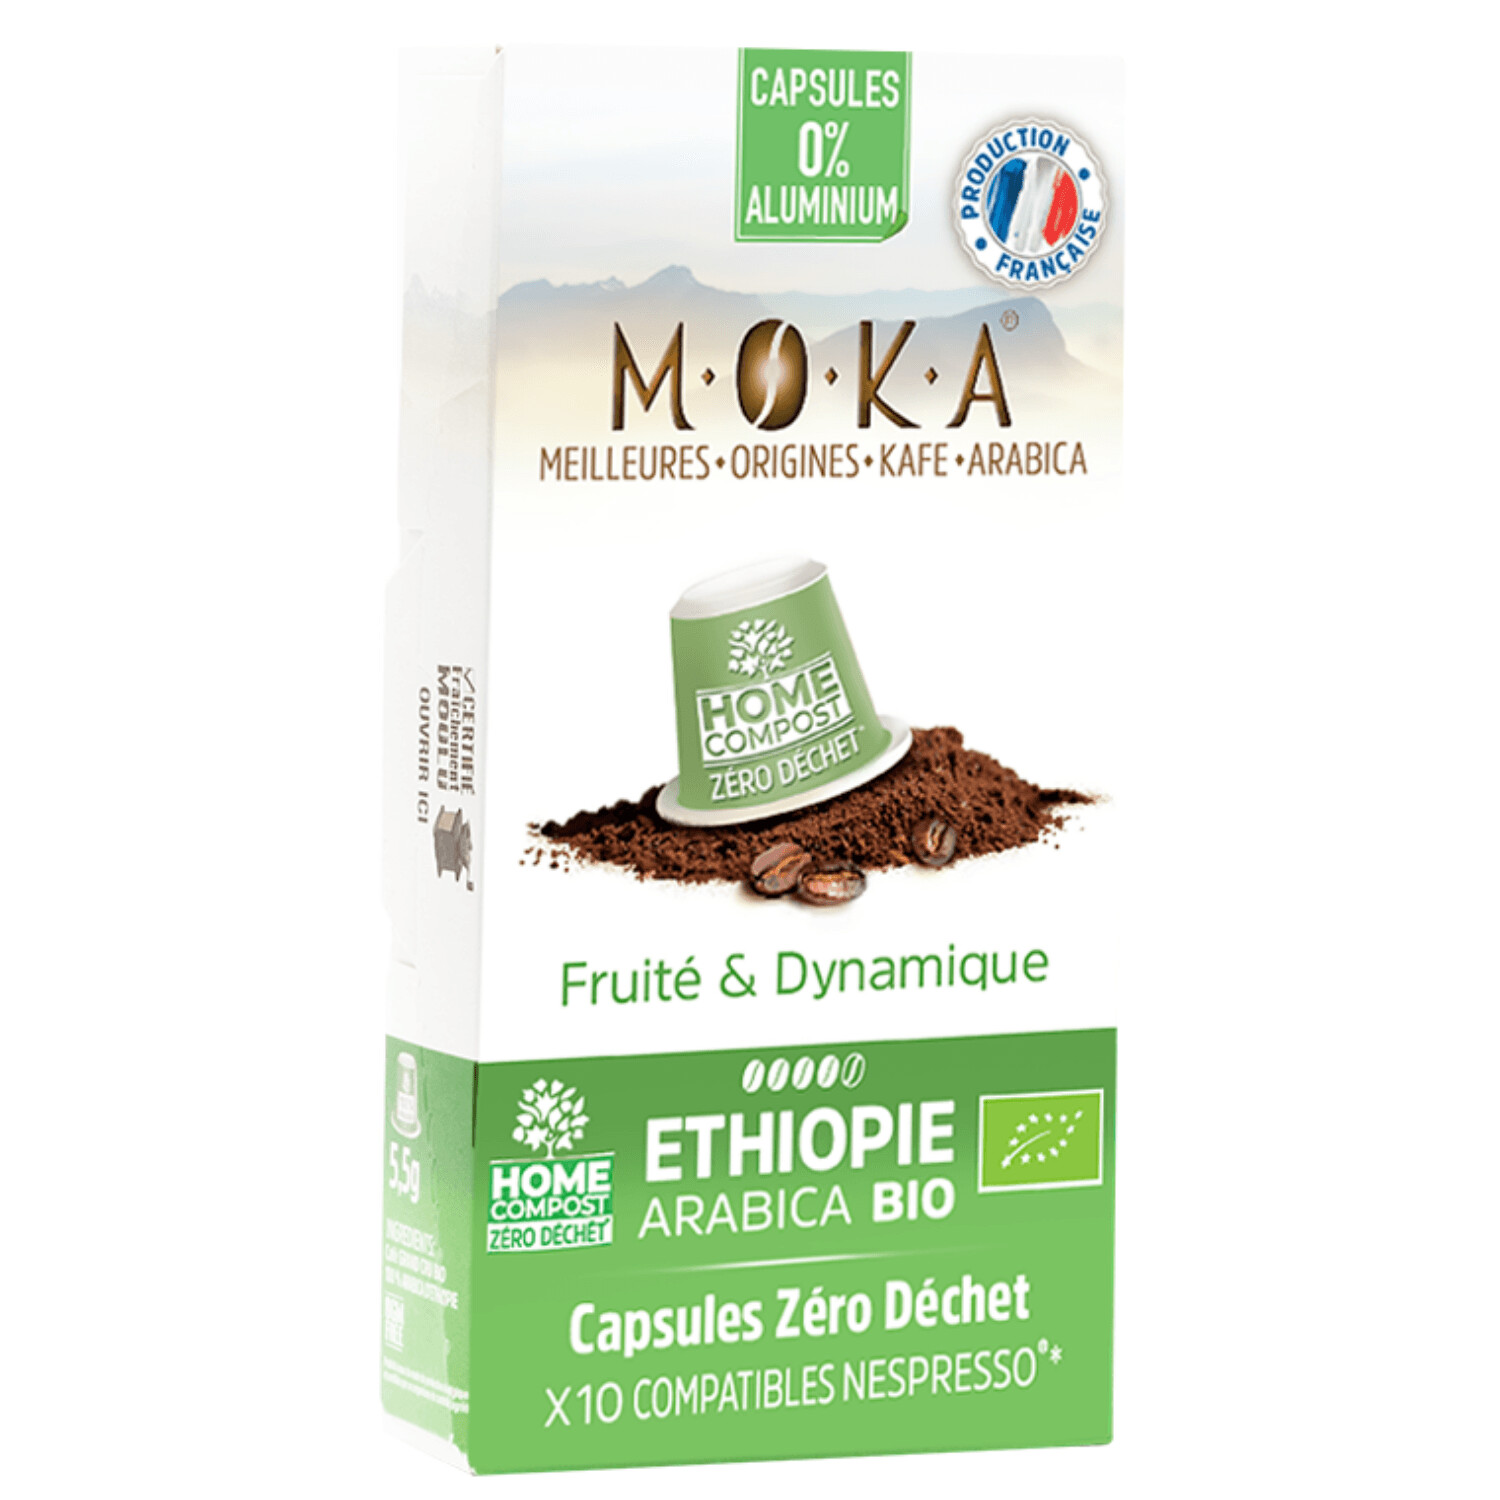 10 capsules - Zéro déchet - HOME COMPOST - compatibles Nespresso® - Arabica Bio d'Ethiopie